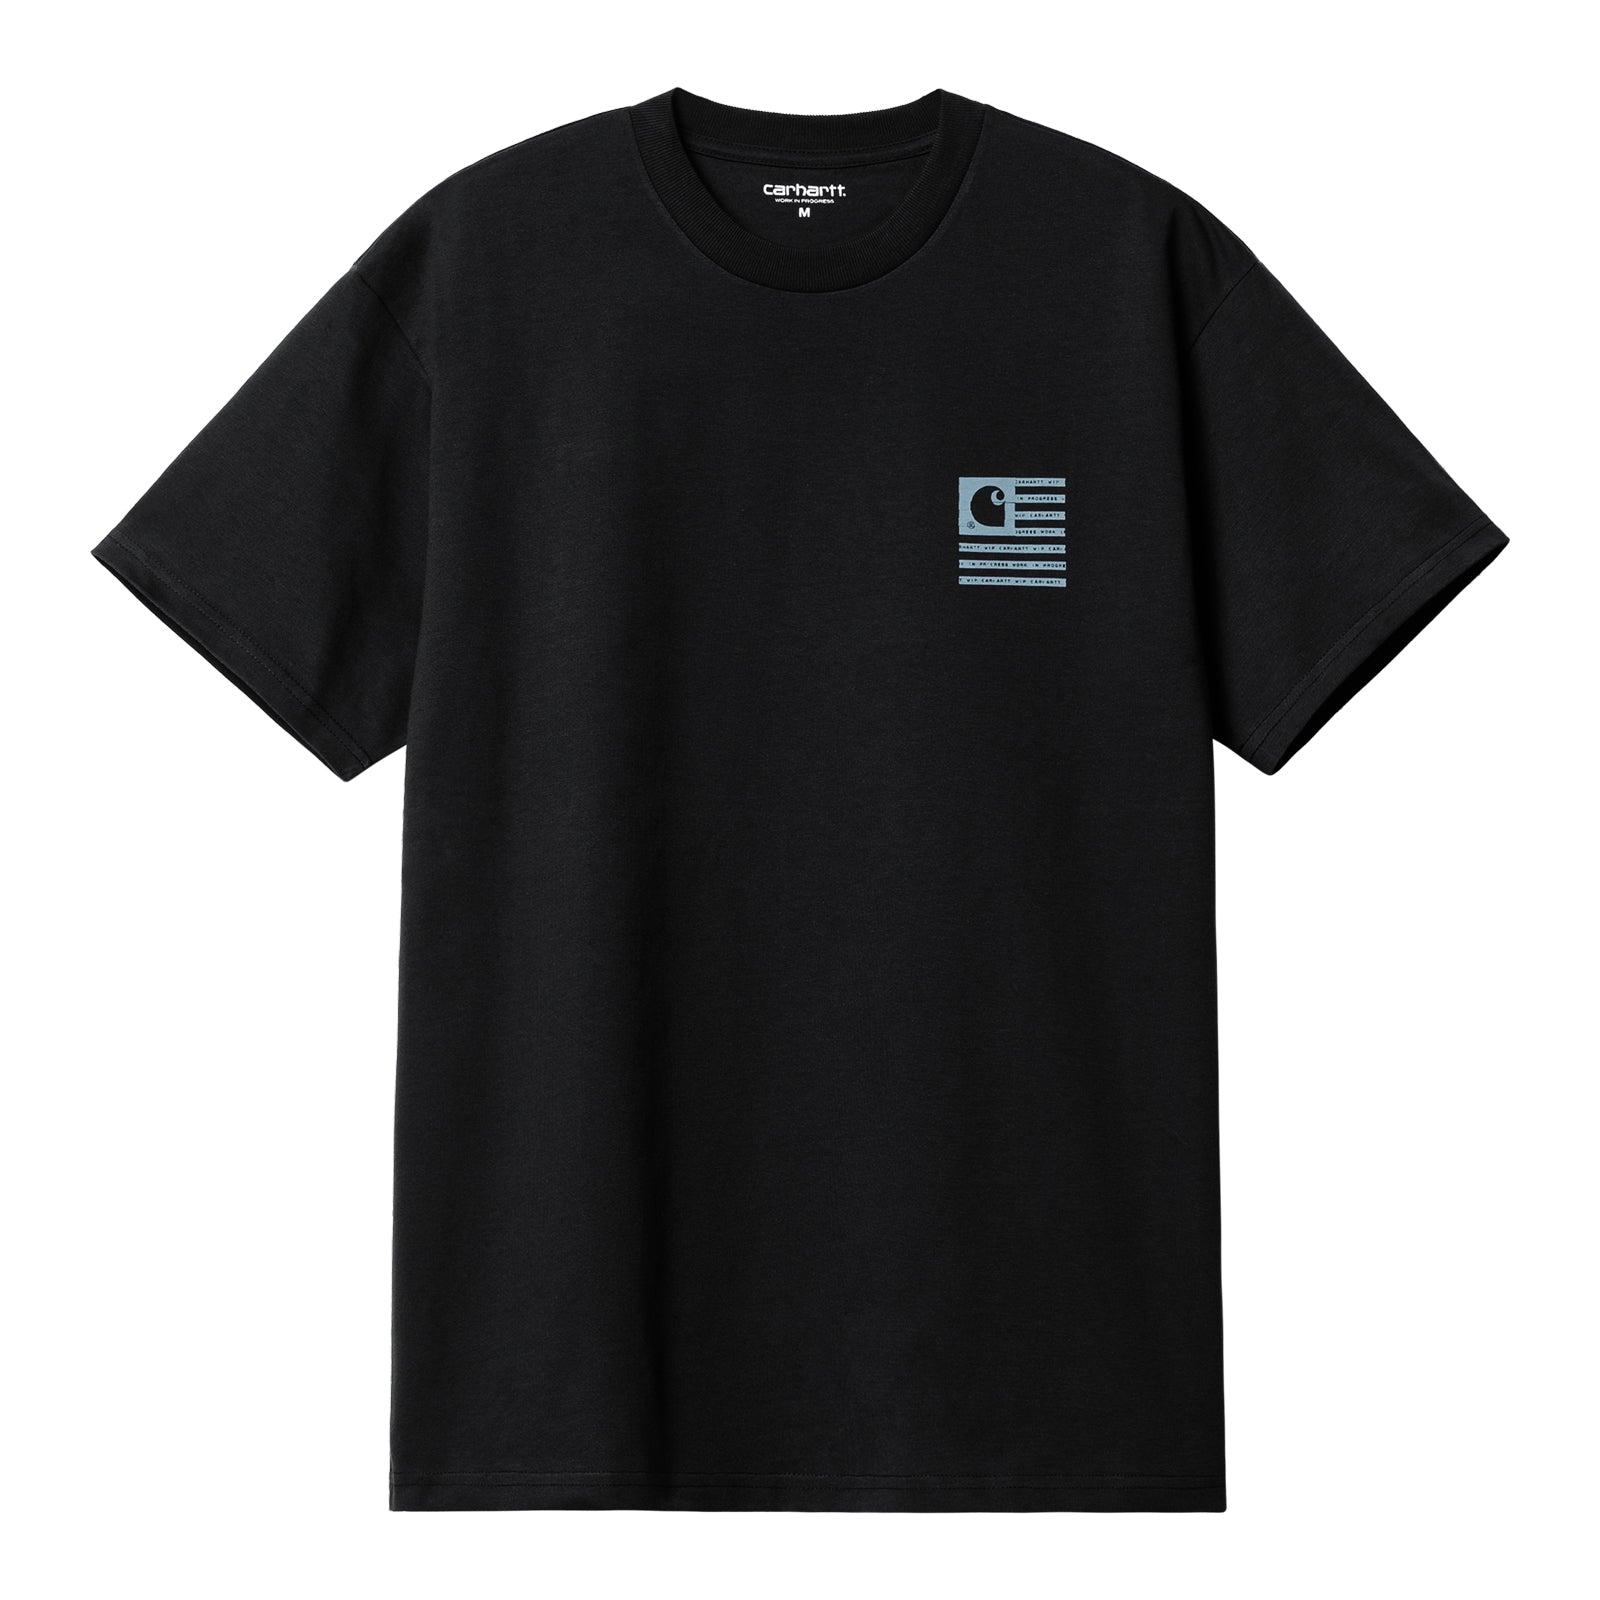 Carhartt WIP Label State Flag T-Shirt Black/Misty Sky. Foto da parte de trás.